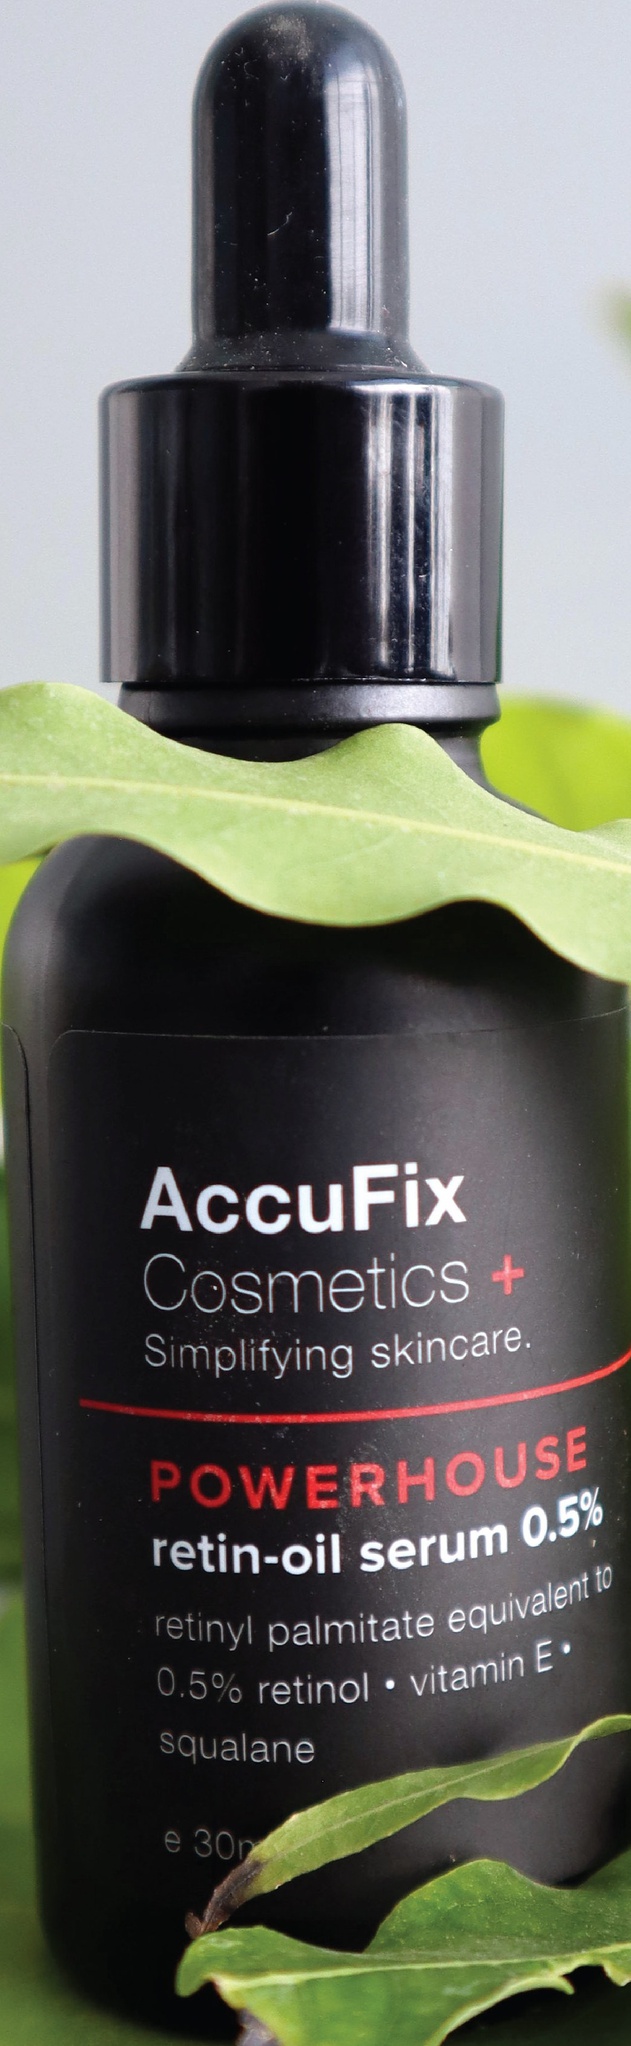 Accufix Cosmetics Retin-oil Serum